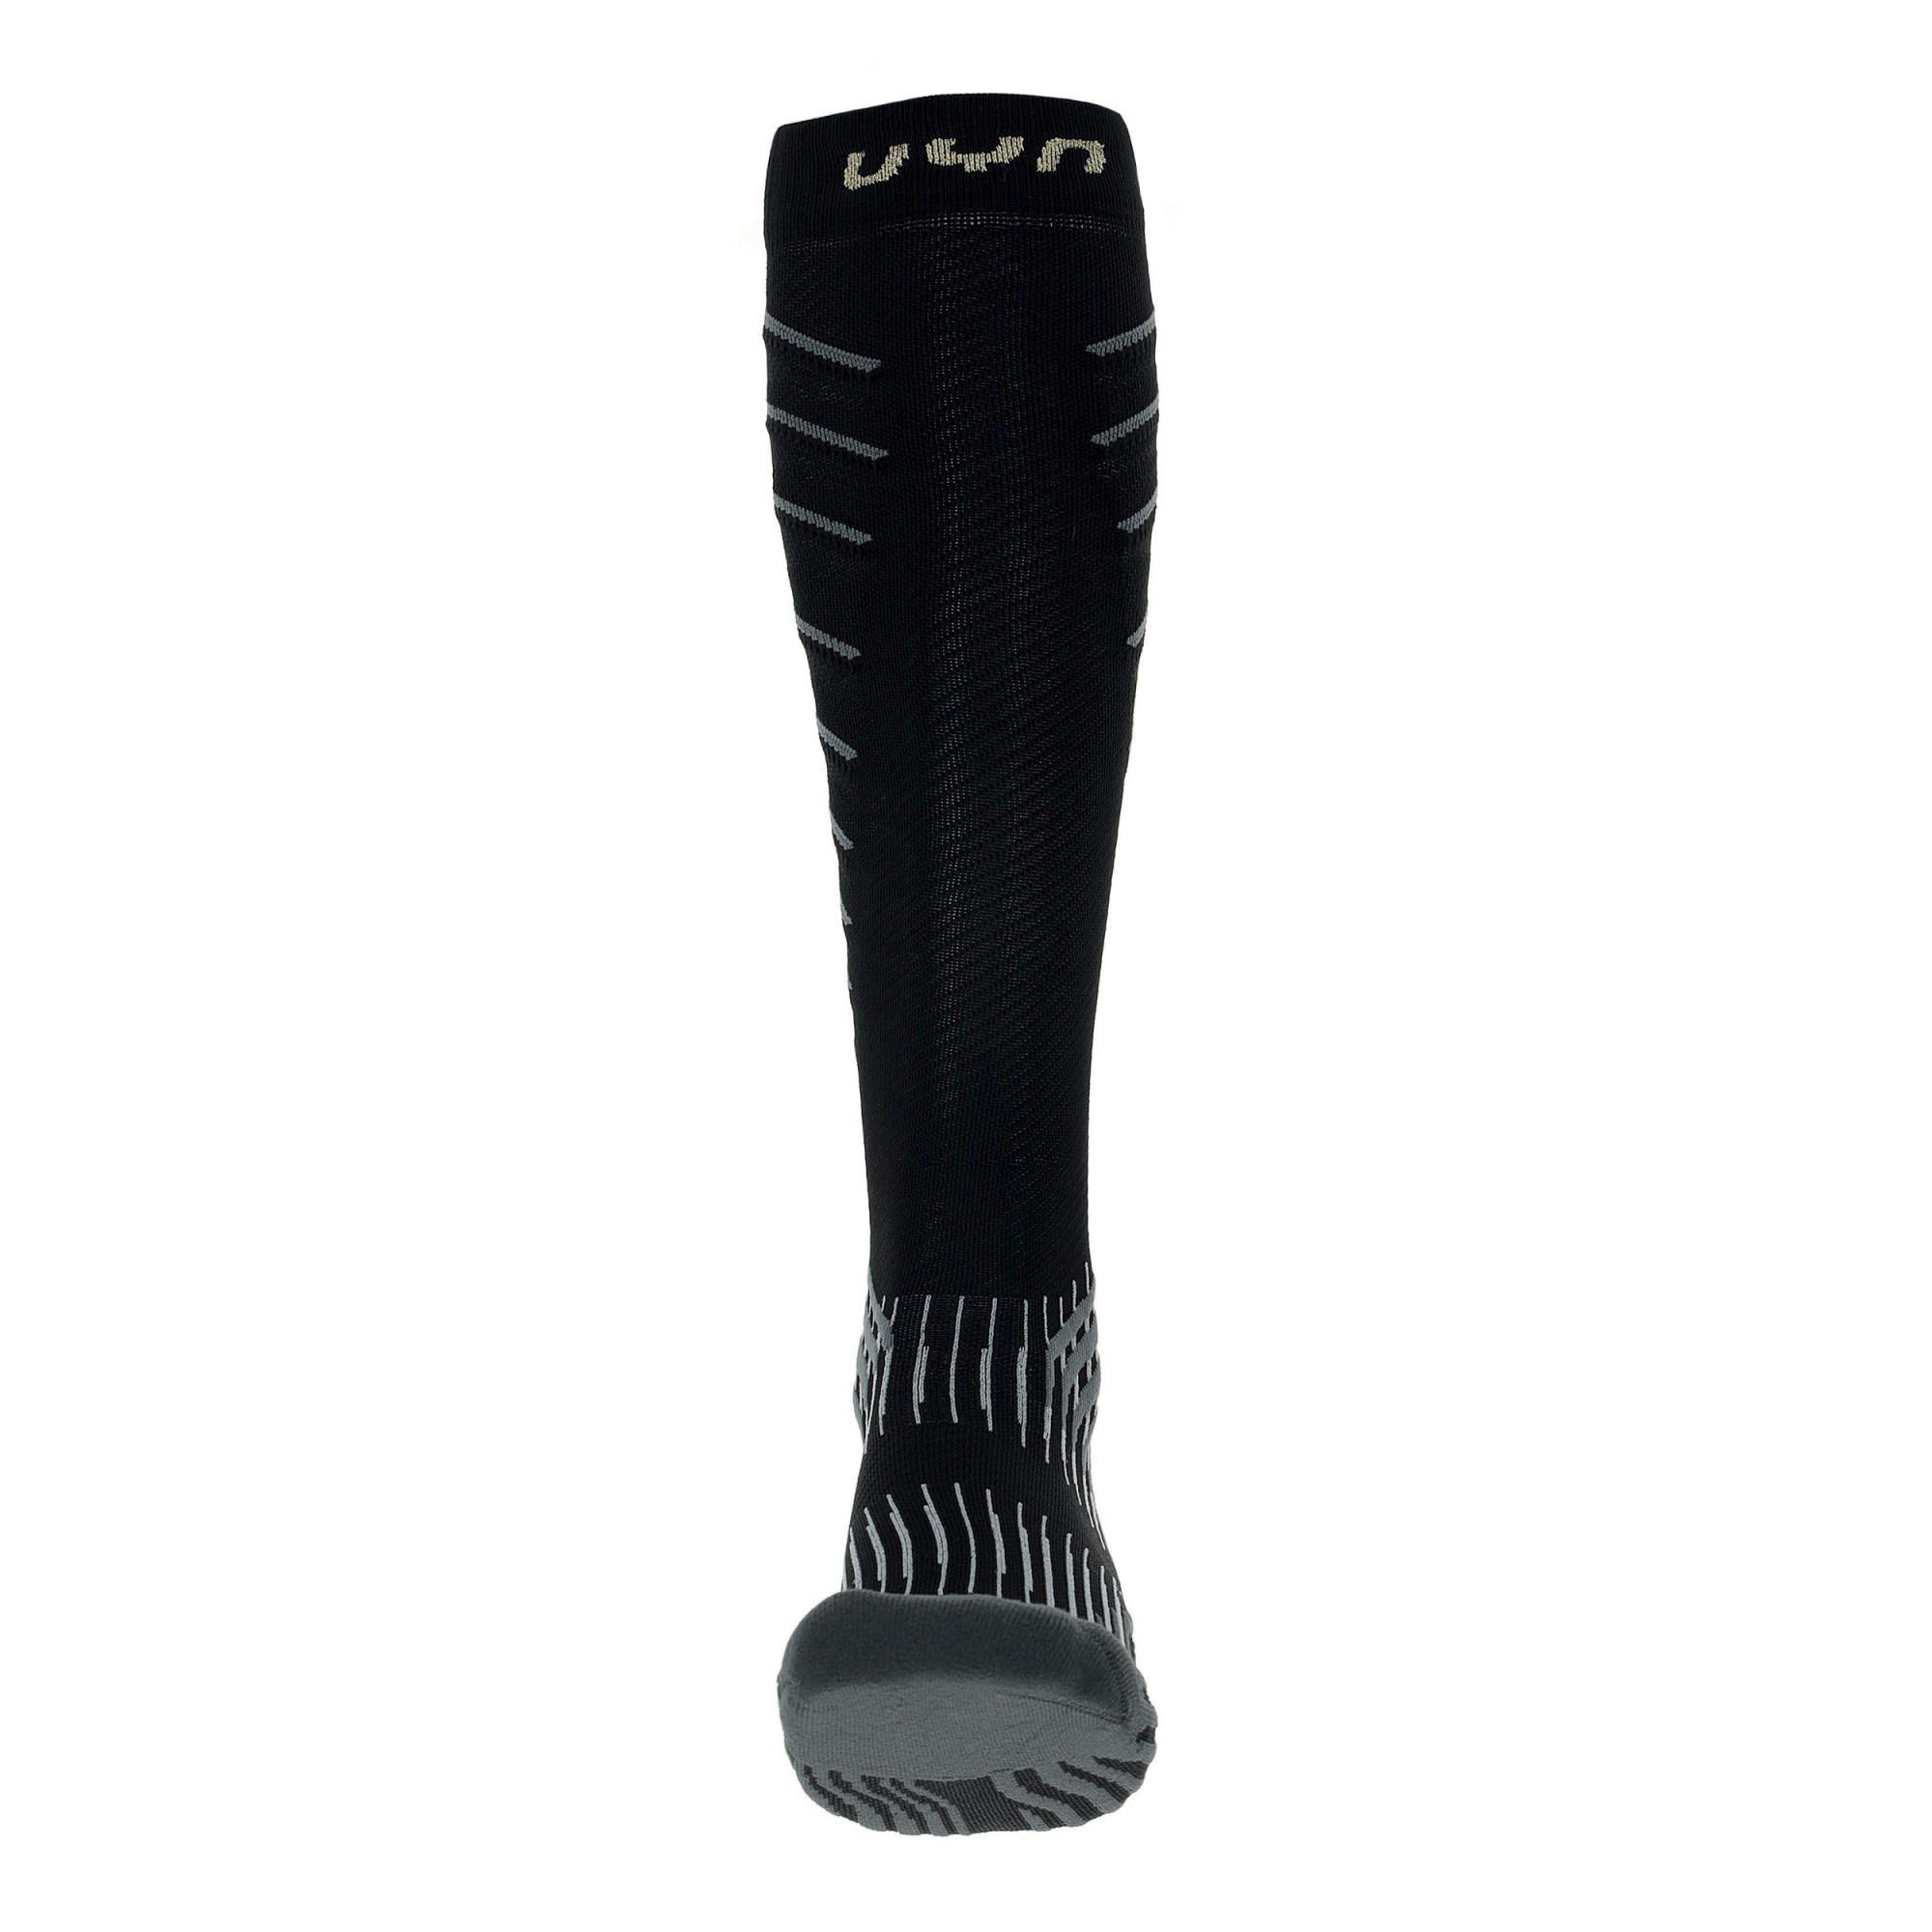 Socks Run W Compression - UYN Damen Onepiece Grey Uyn 0.0 Black Thermosocken